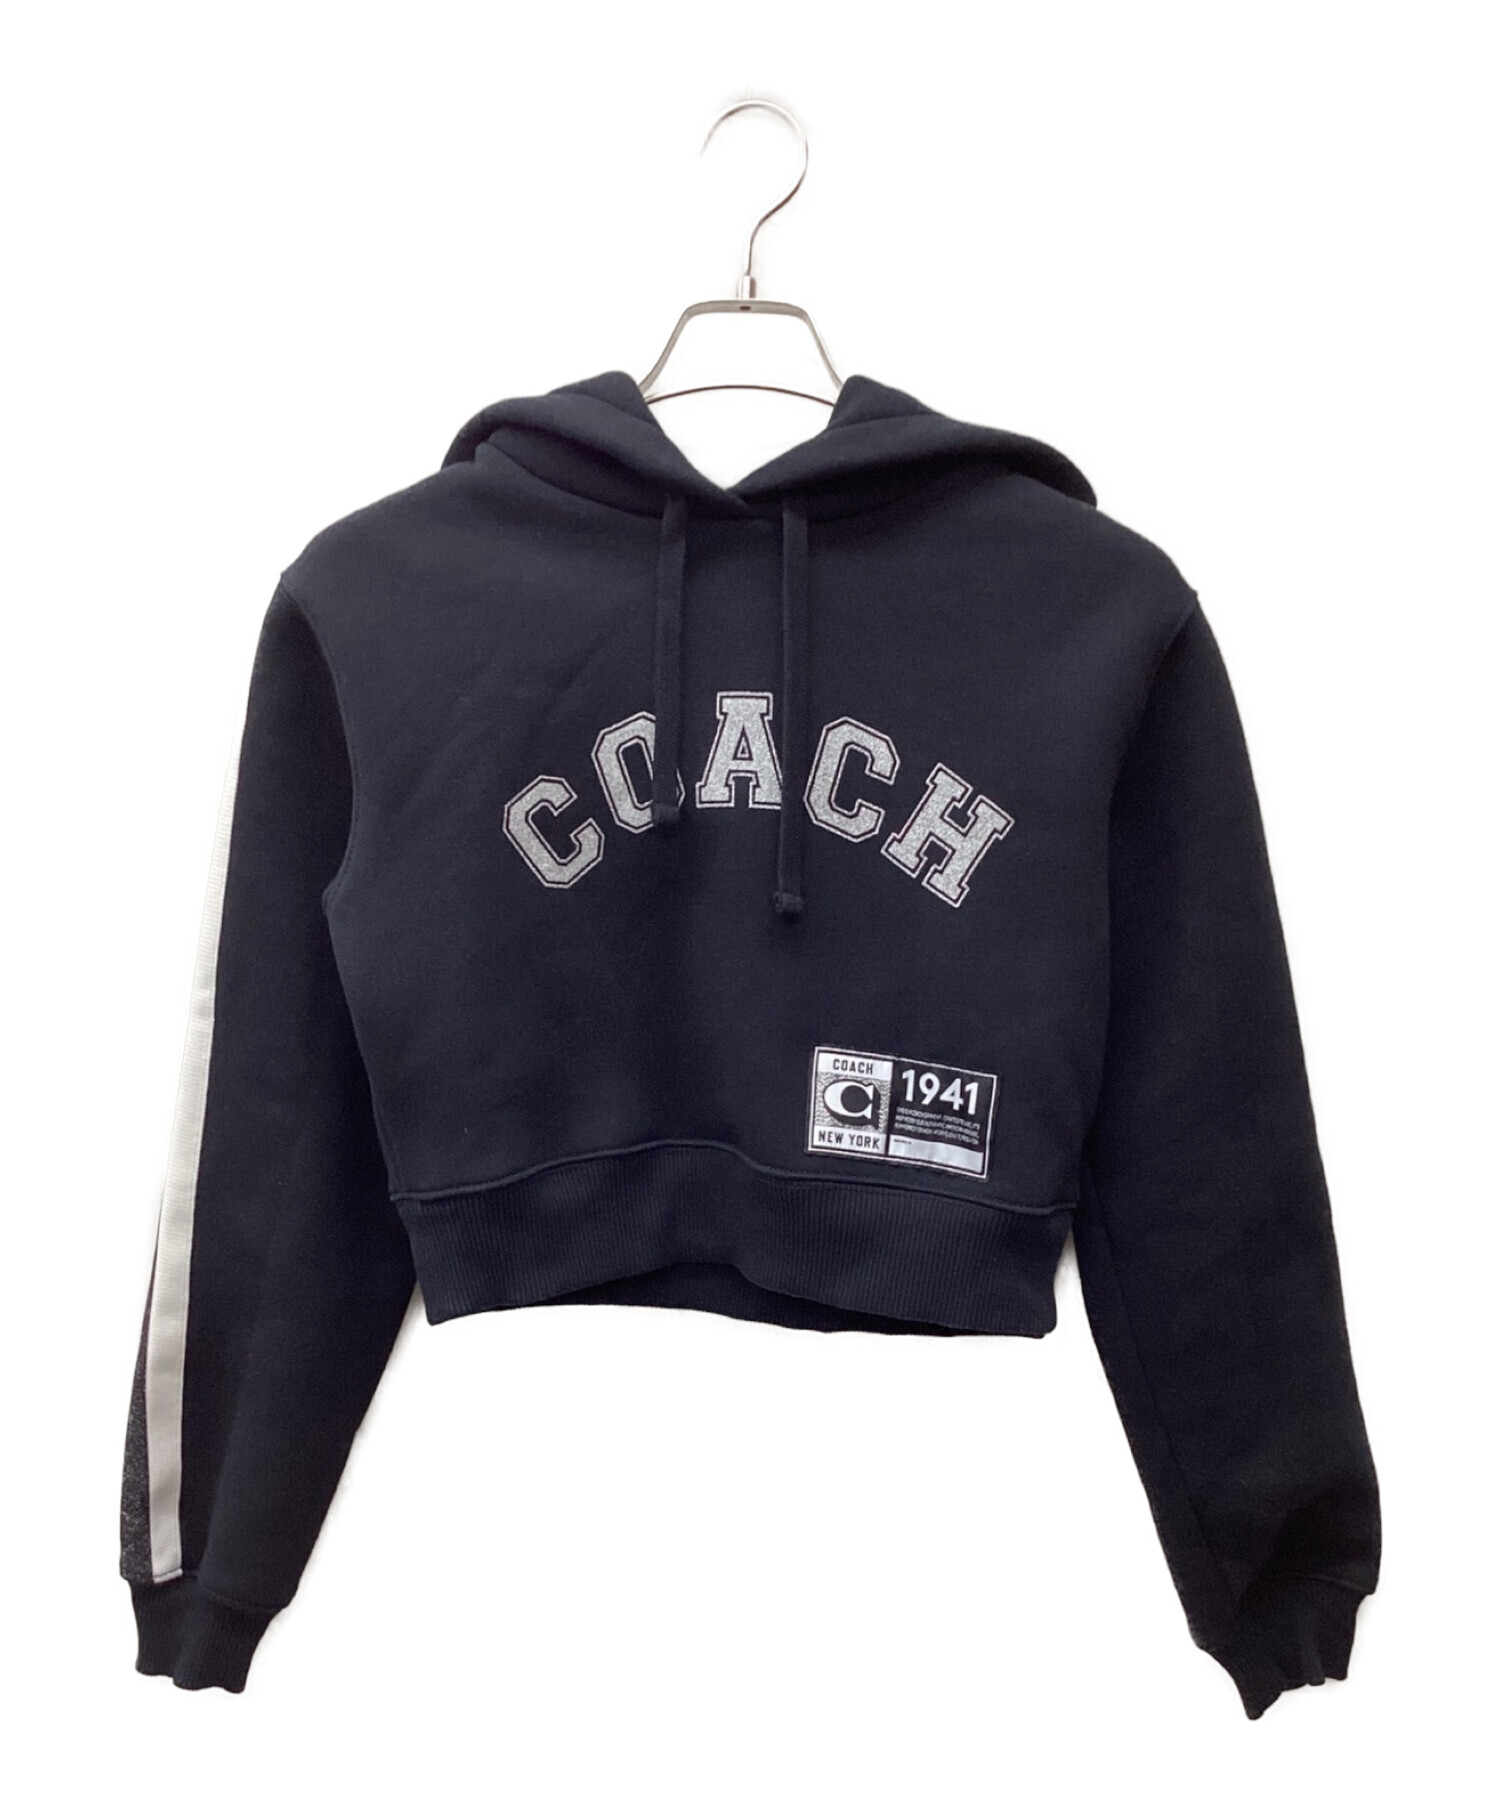 COACH (コーチ) プルオーバーパーカー ブラック サイズ:S